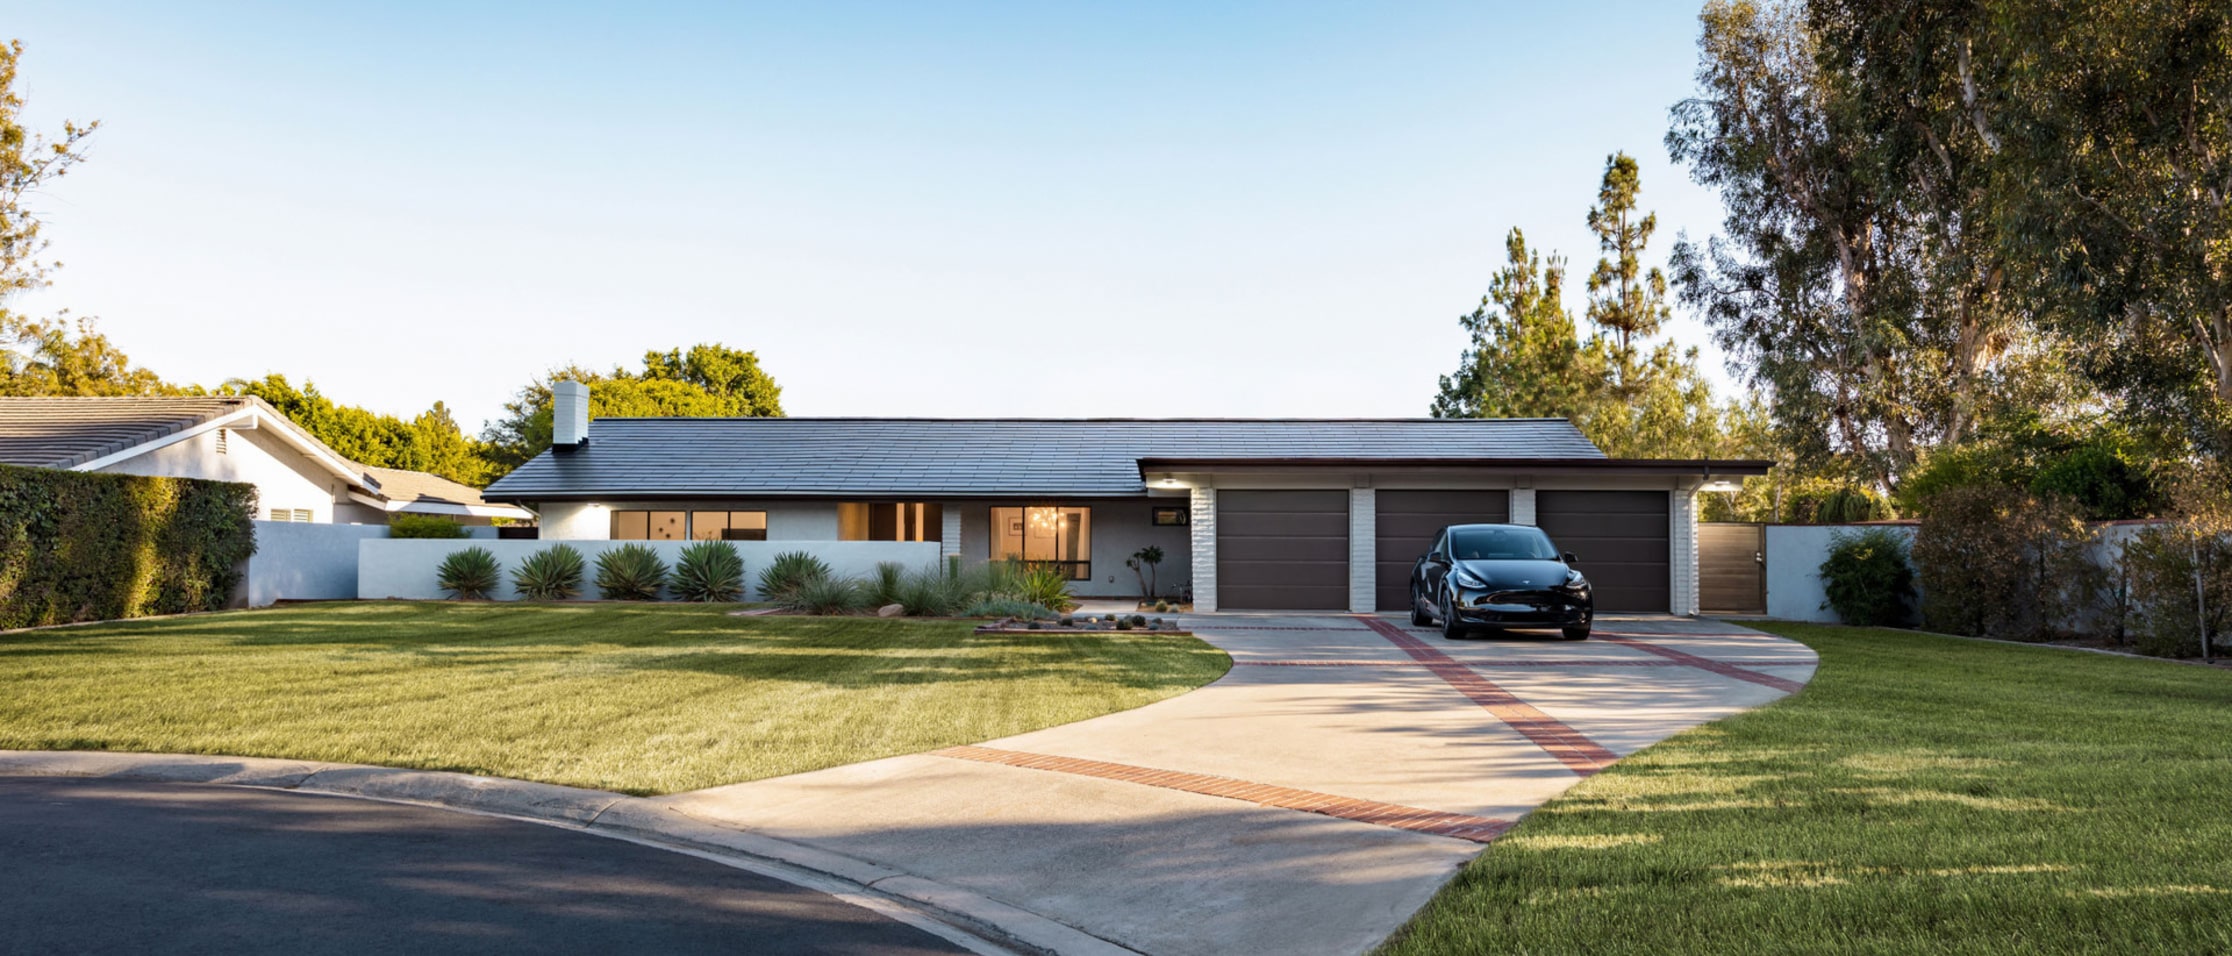 Huis met elektrische stroom geleverd door Tesla-energieproducten